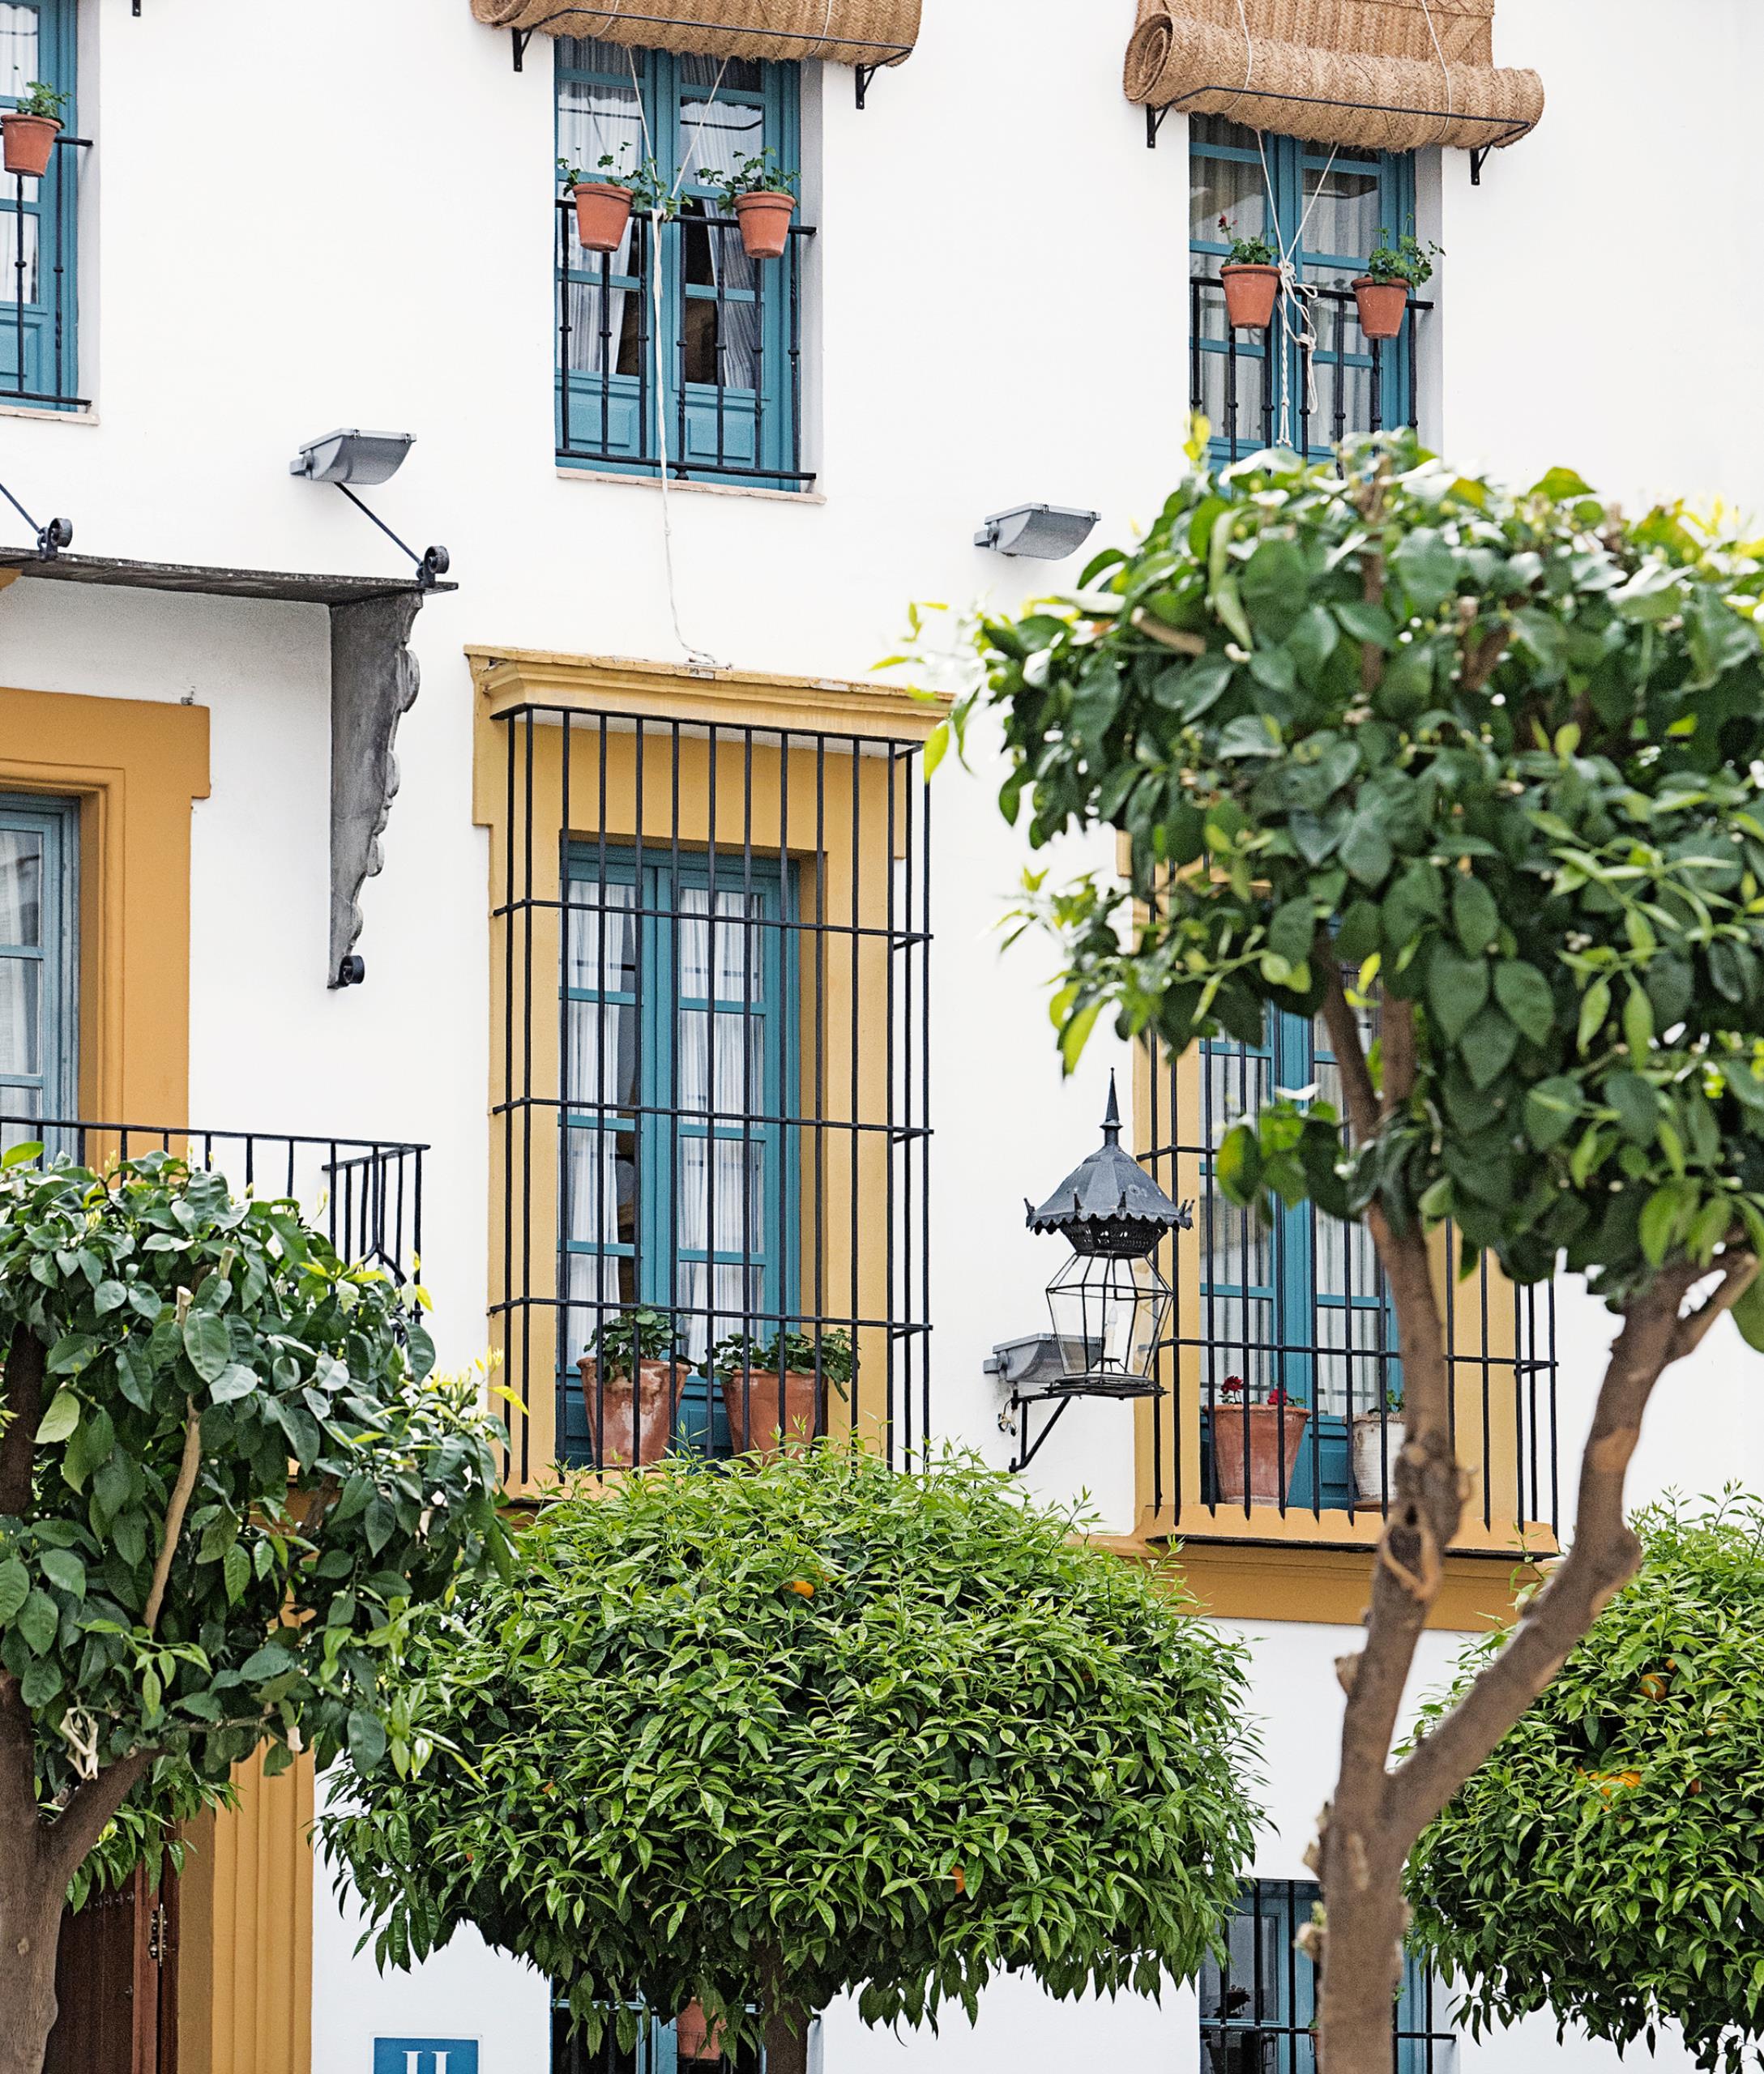 Hospes Las Casas del Rey de Baeza (Seville, - Design